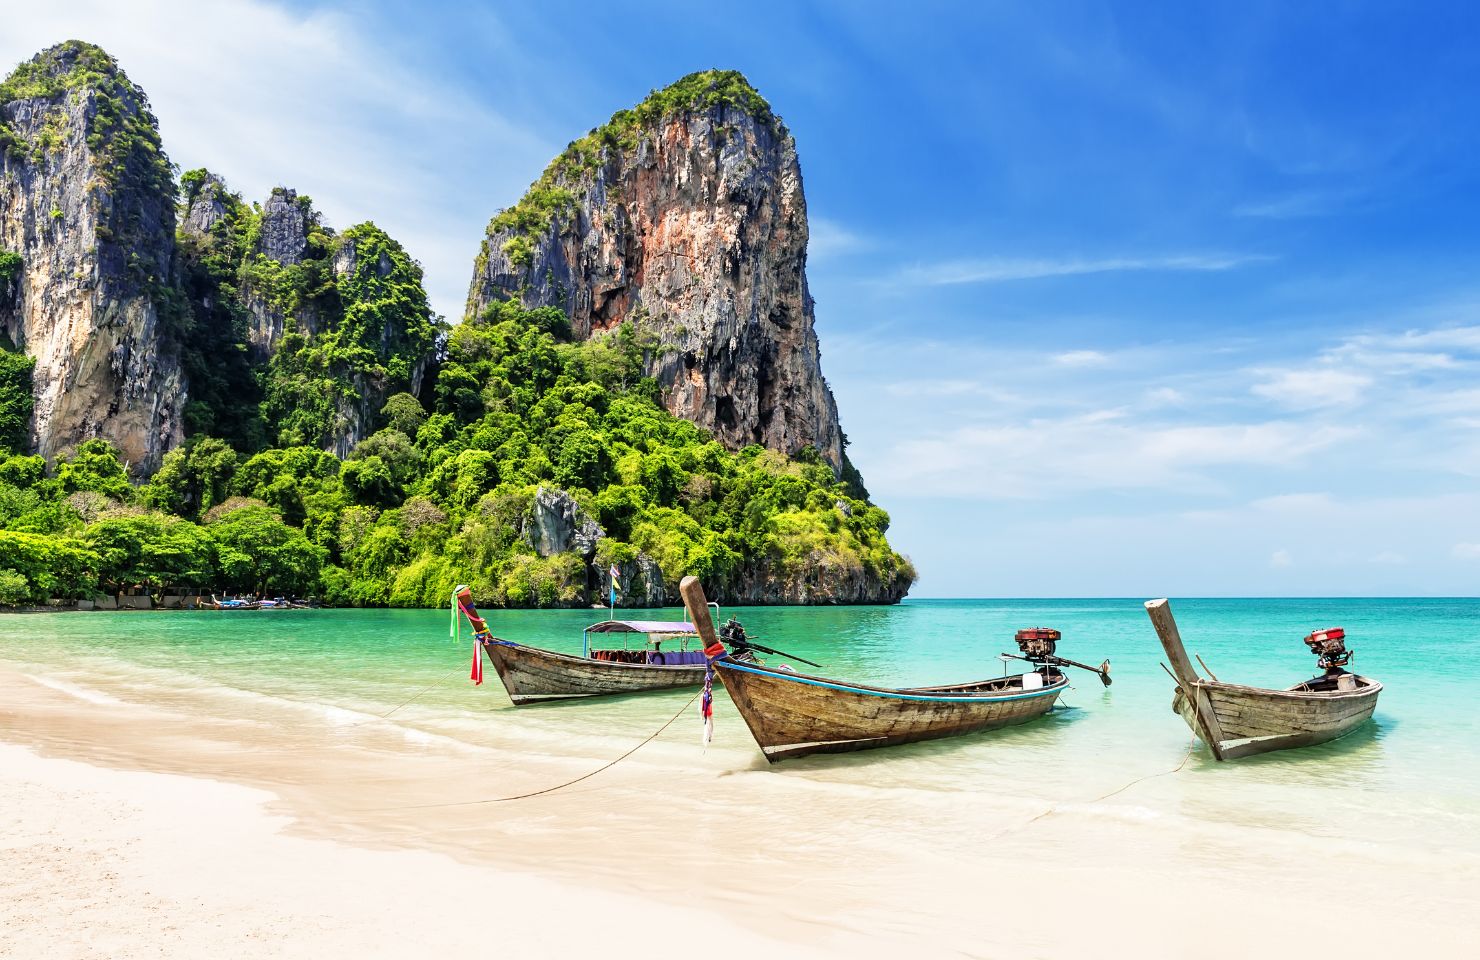 Bucht in Thailand mit türkisblauem Wasser und Booten